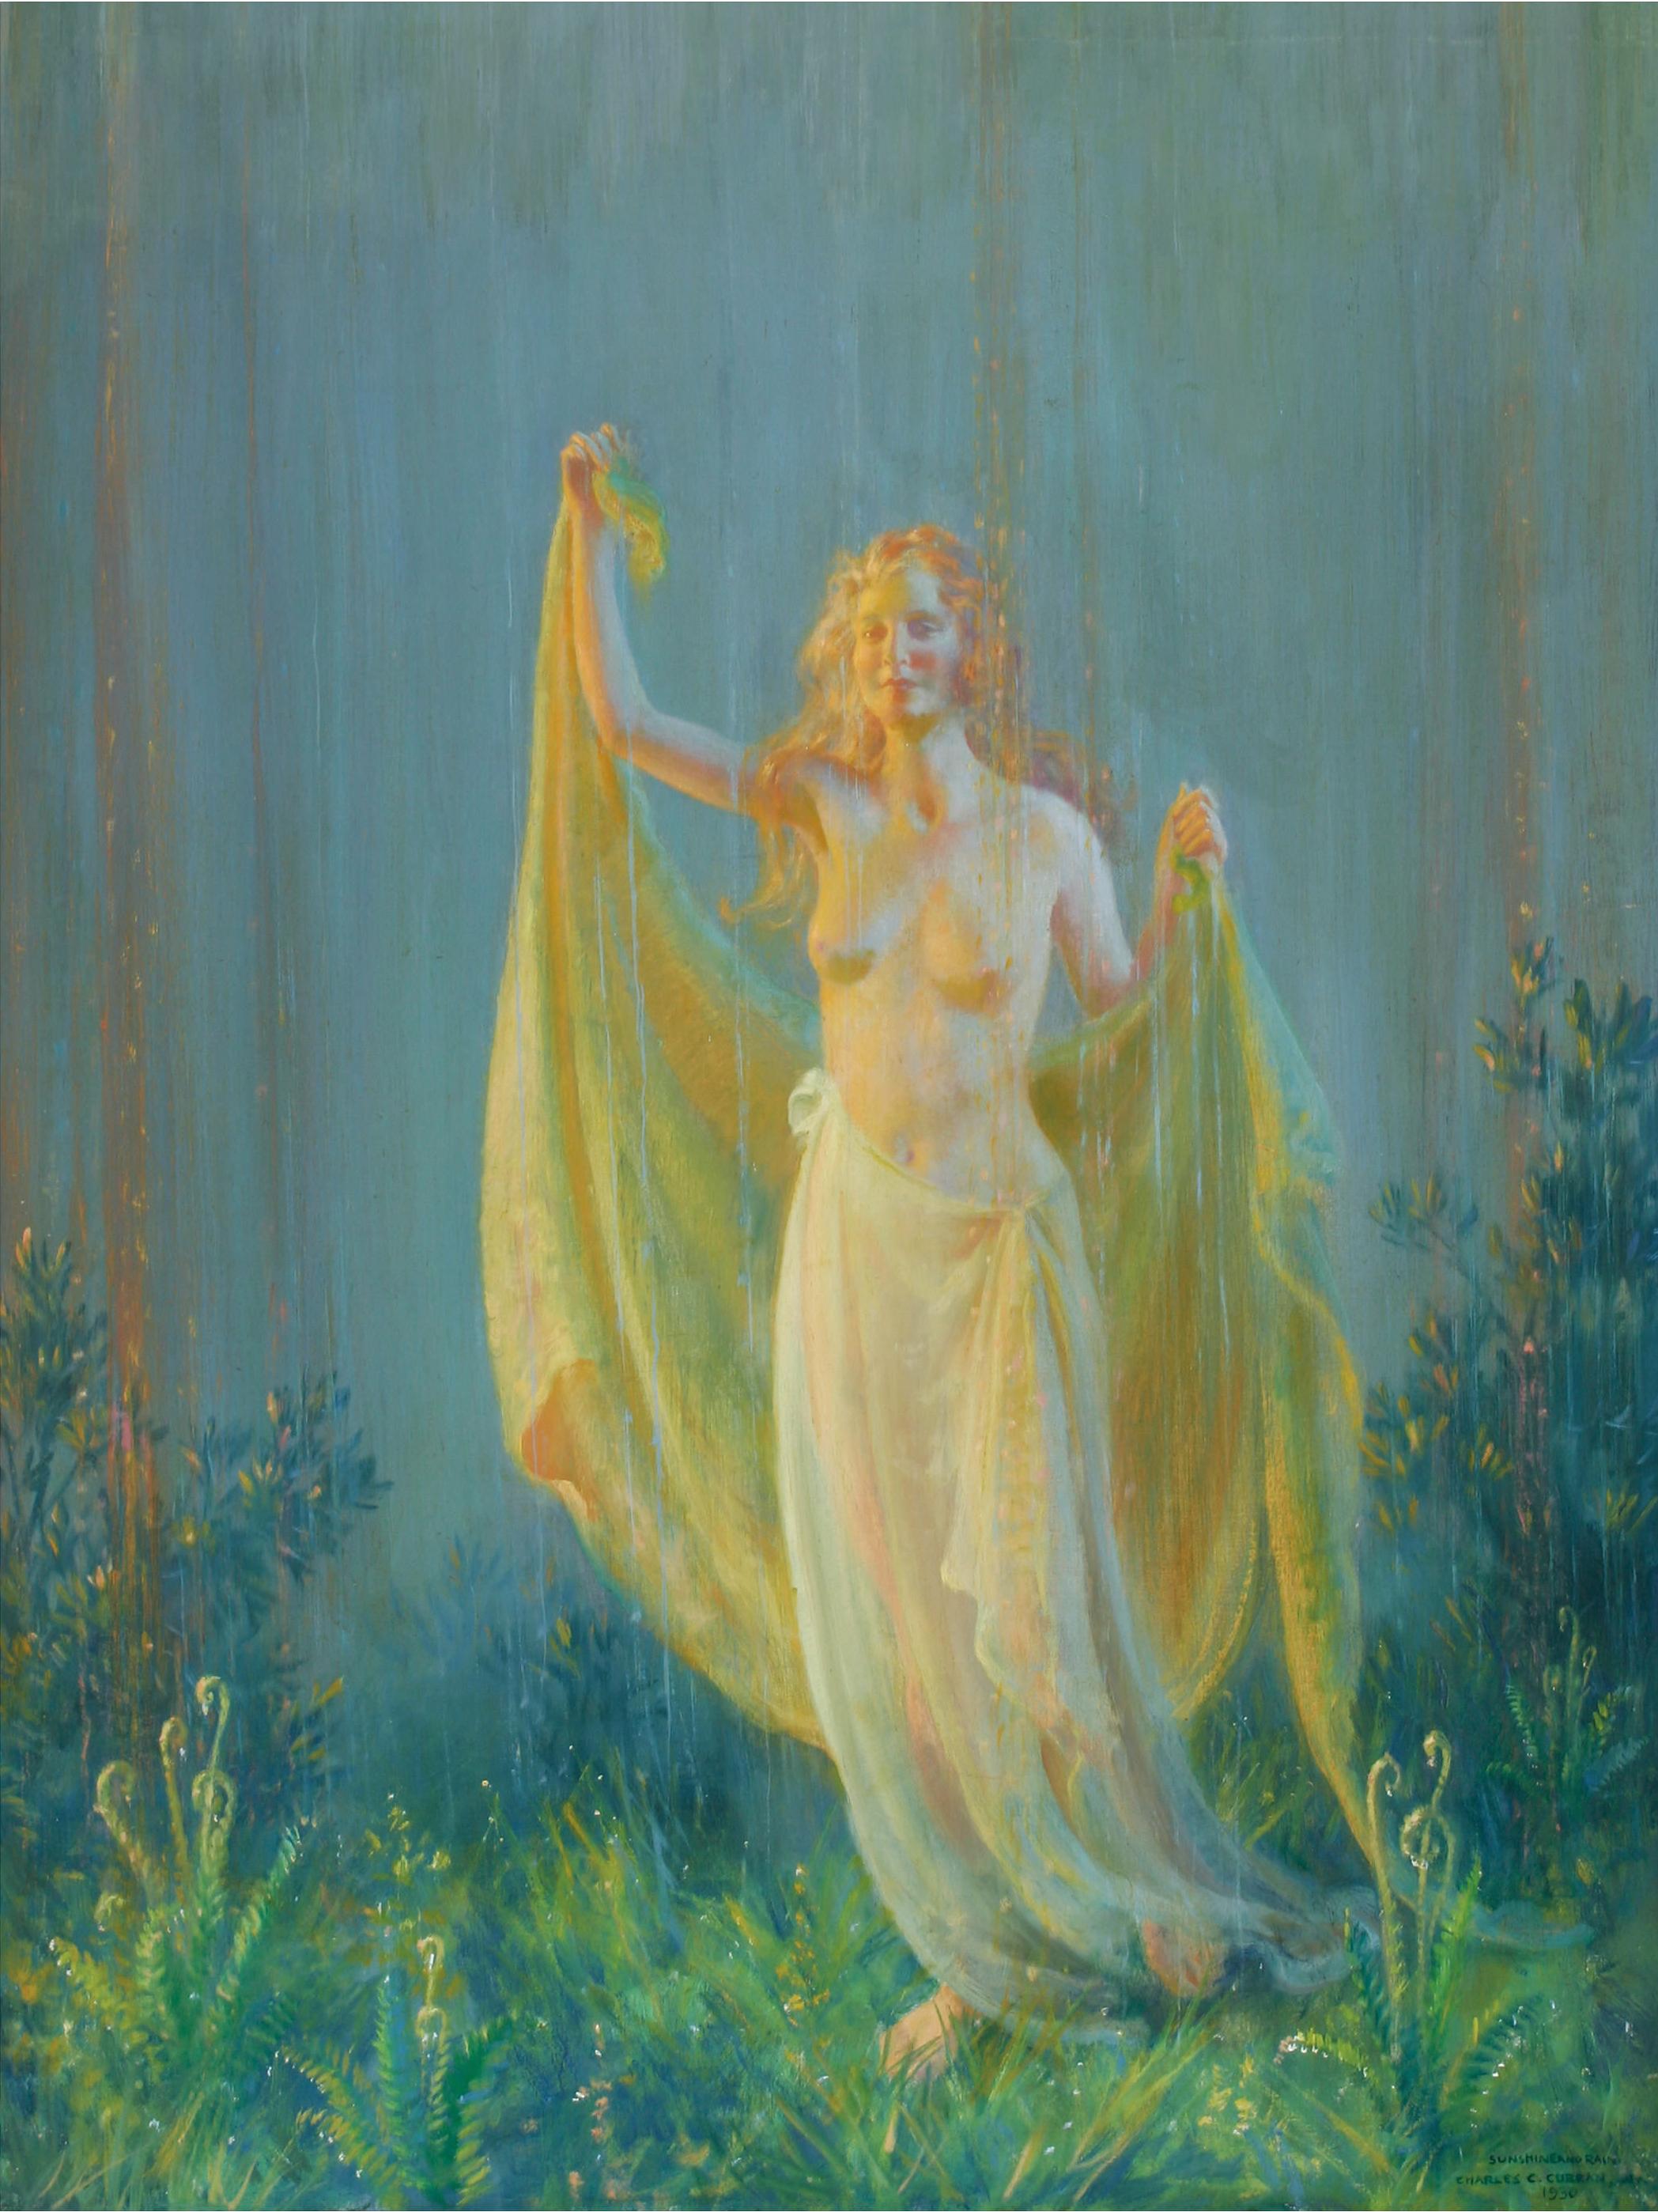 Sonnenschein und Regen, Halbakt Frauen in fröhlichem Moment (Post-Impressionismus), Painting, von Charles Courtney Curran